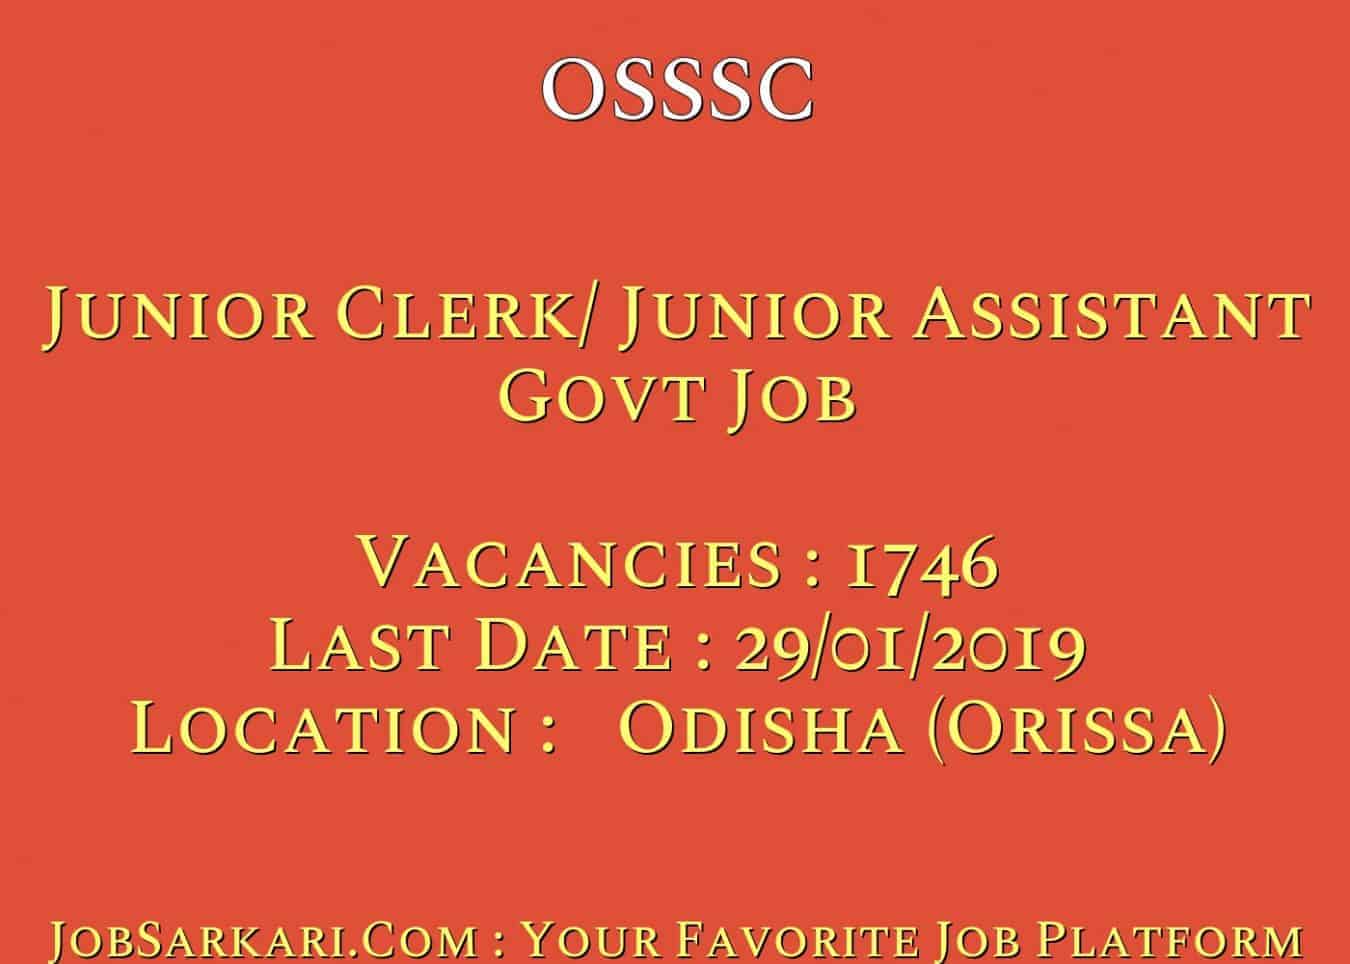 OSSSC Recruitment 2018 For Junior Clerk/ Junior Assistant Govt Job